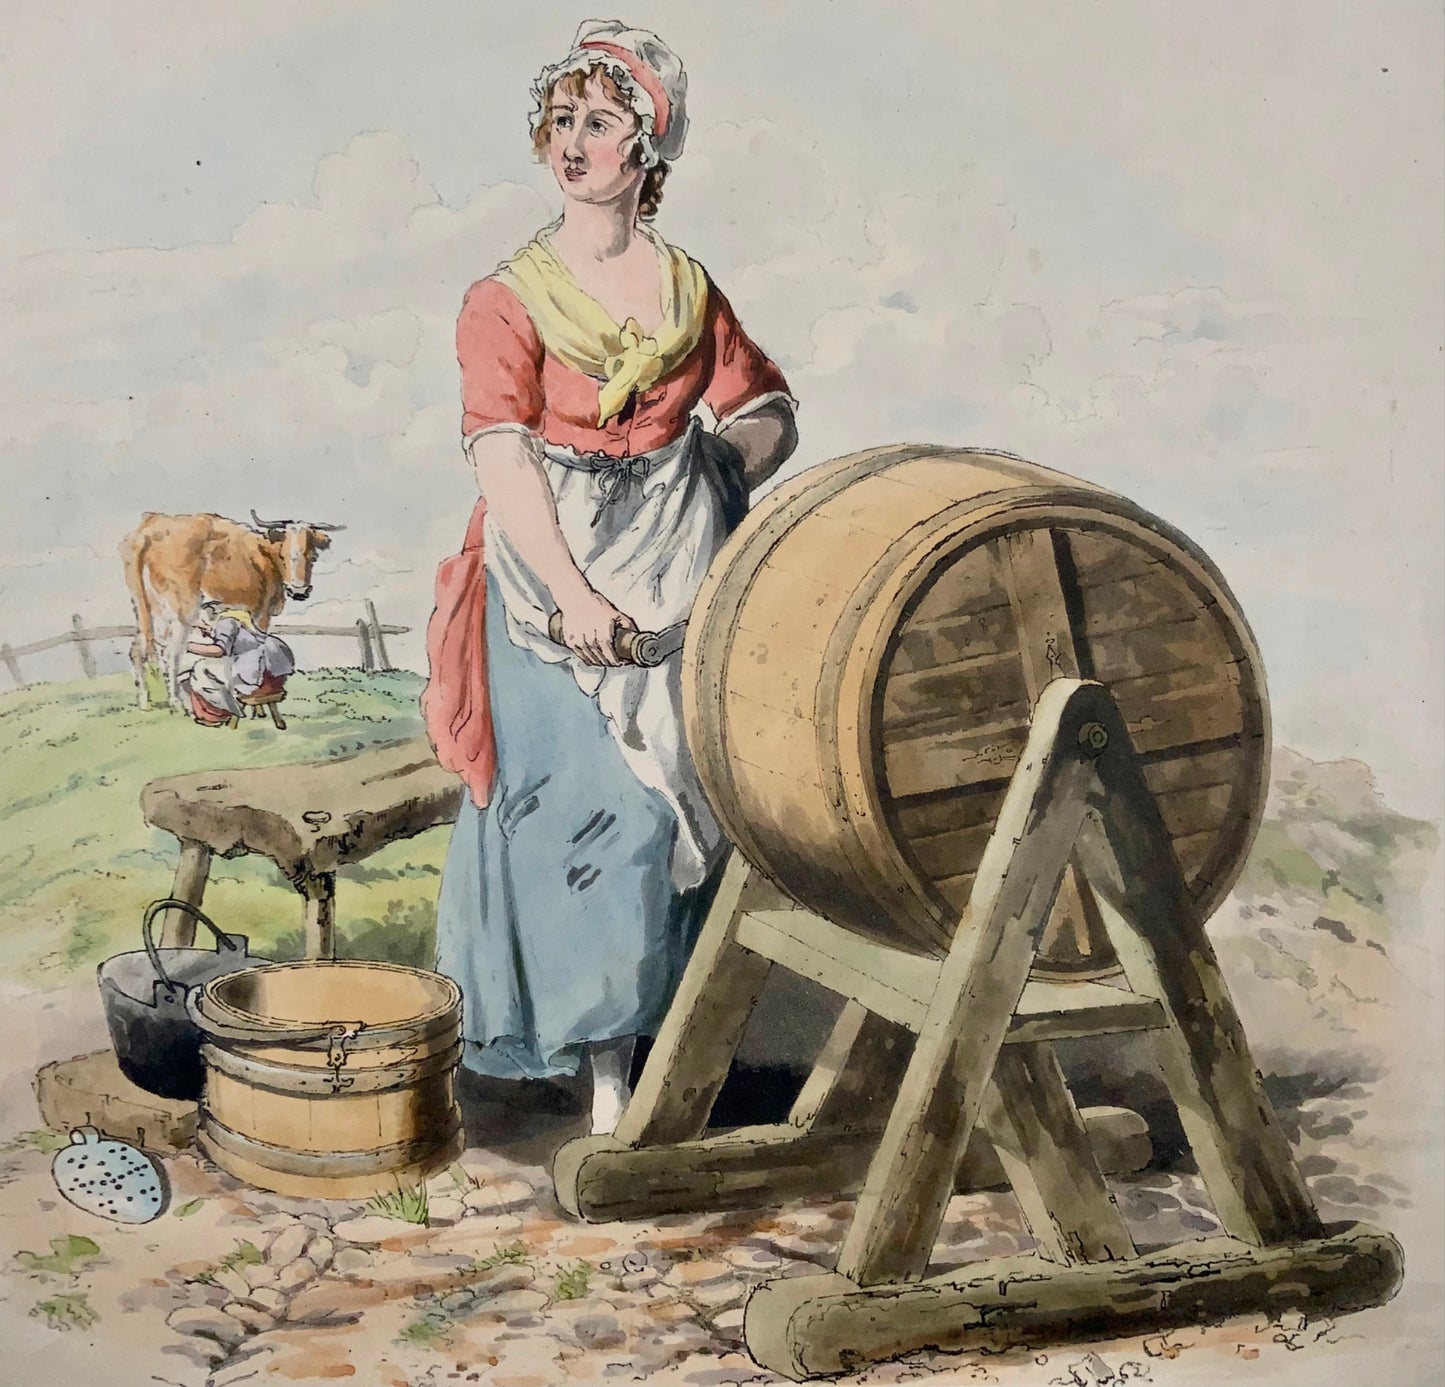 1805 Milk Maid, burro, mungitura, Wm Miller, acquatinta in folio con colori a mano, agricoltura, mestieri